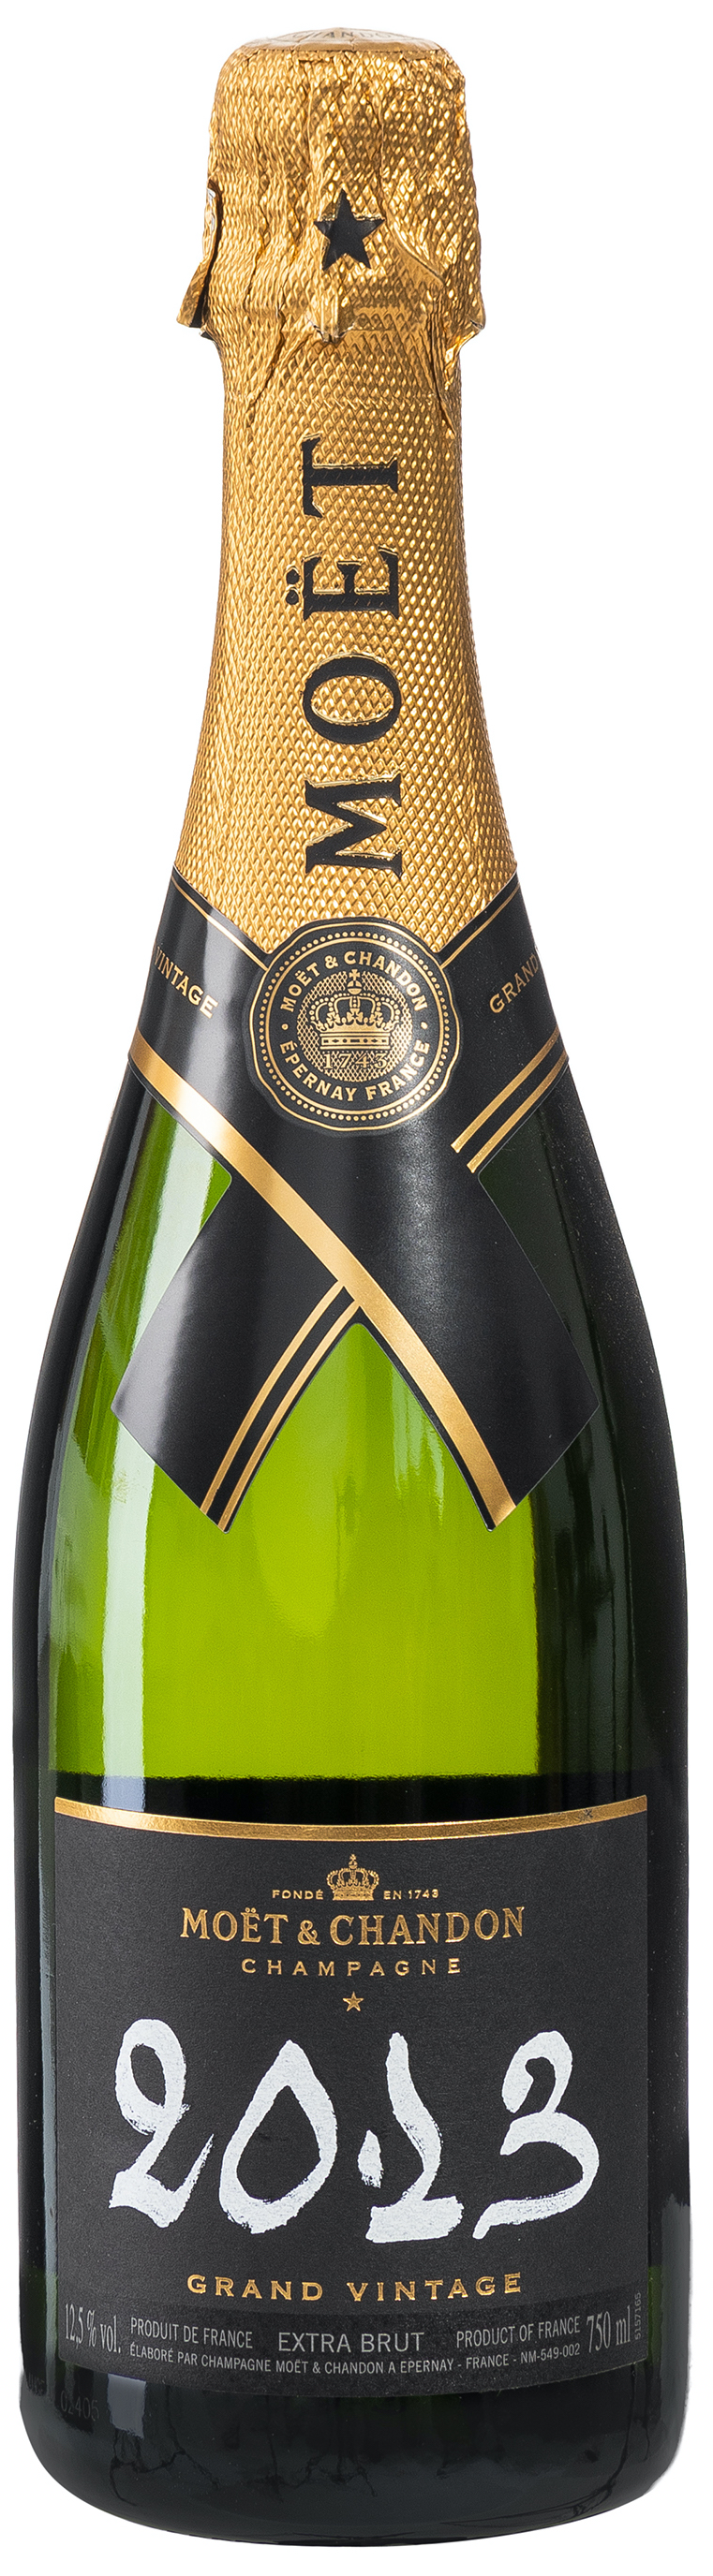 Moët & Chandon Grand Vintage 2013 Champagner 12% vol. 0,75L